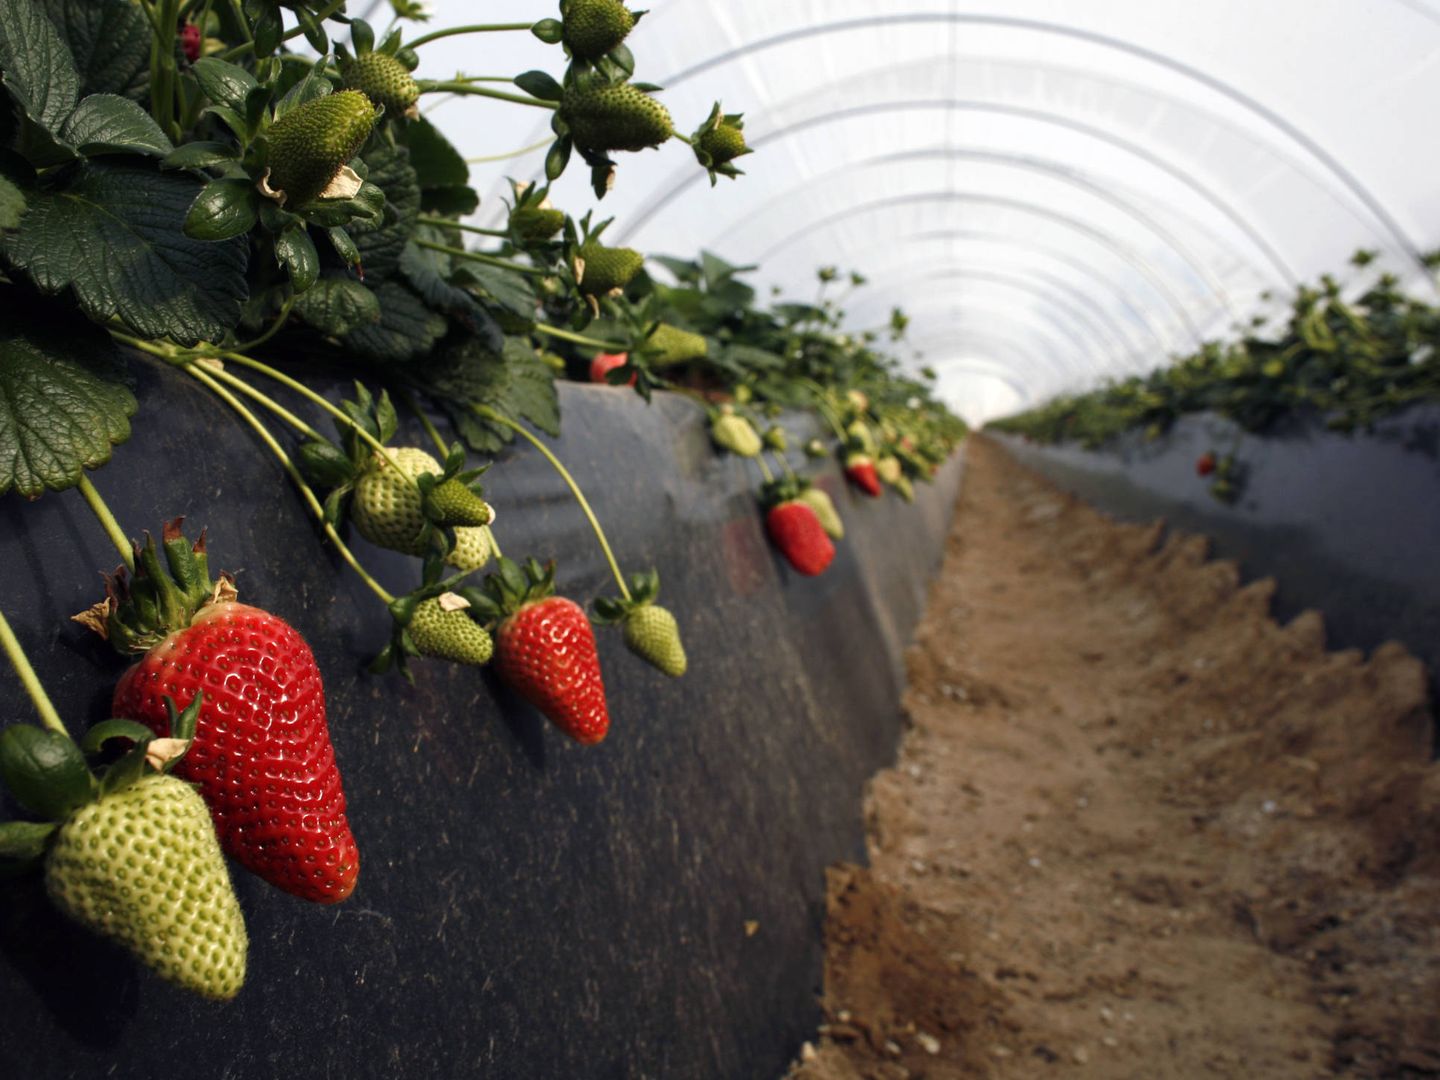 Invernaderos de fresas en Rociana. (Reuters)